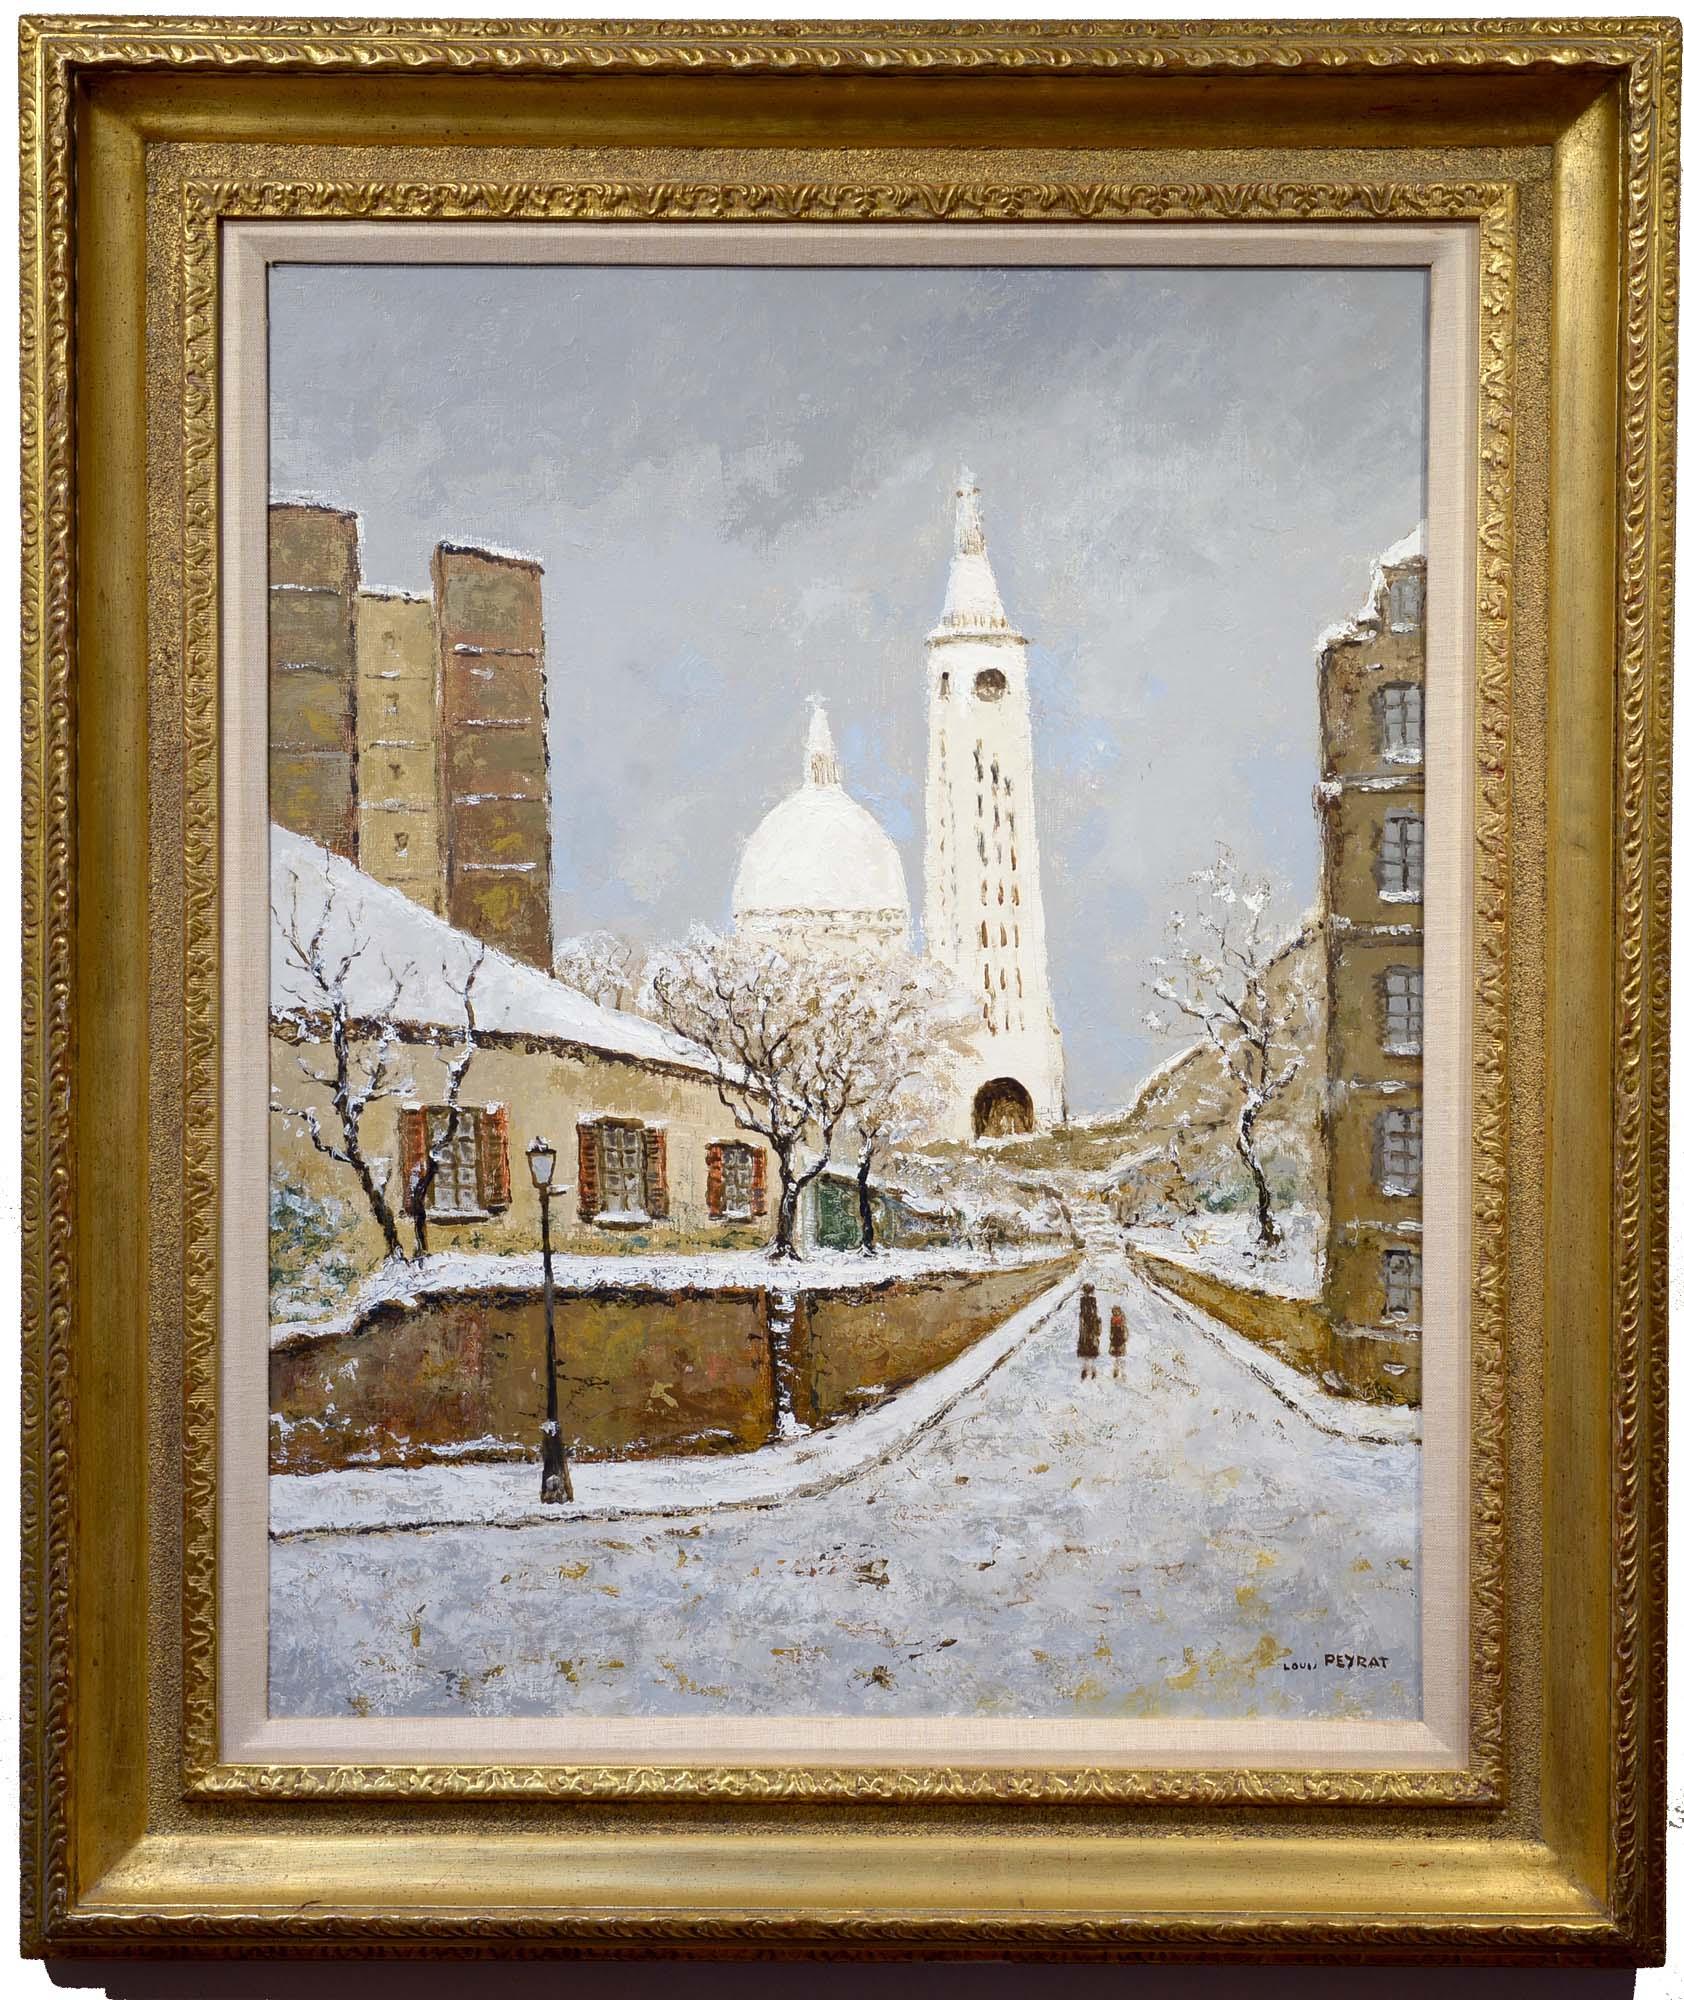 Sacré Coeur, Montmartre, Paris, France, Winter Cityscape - Painting by Louis Peyrat